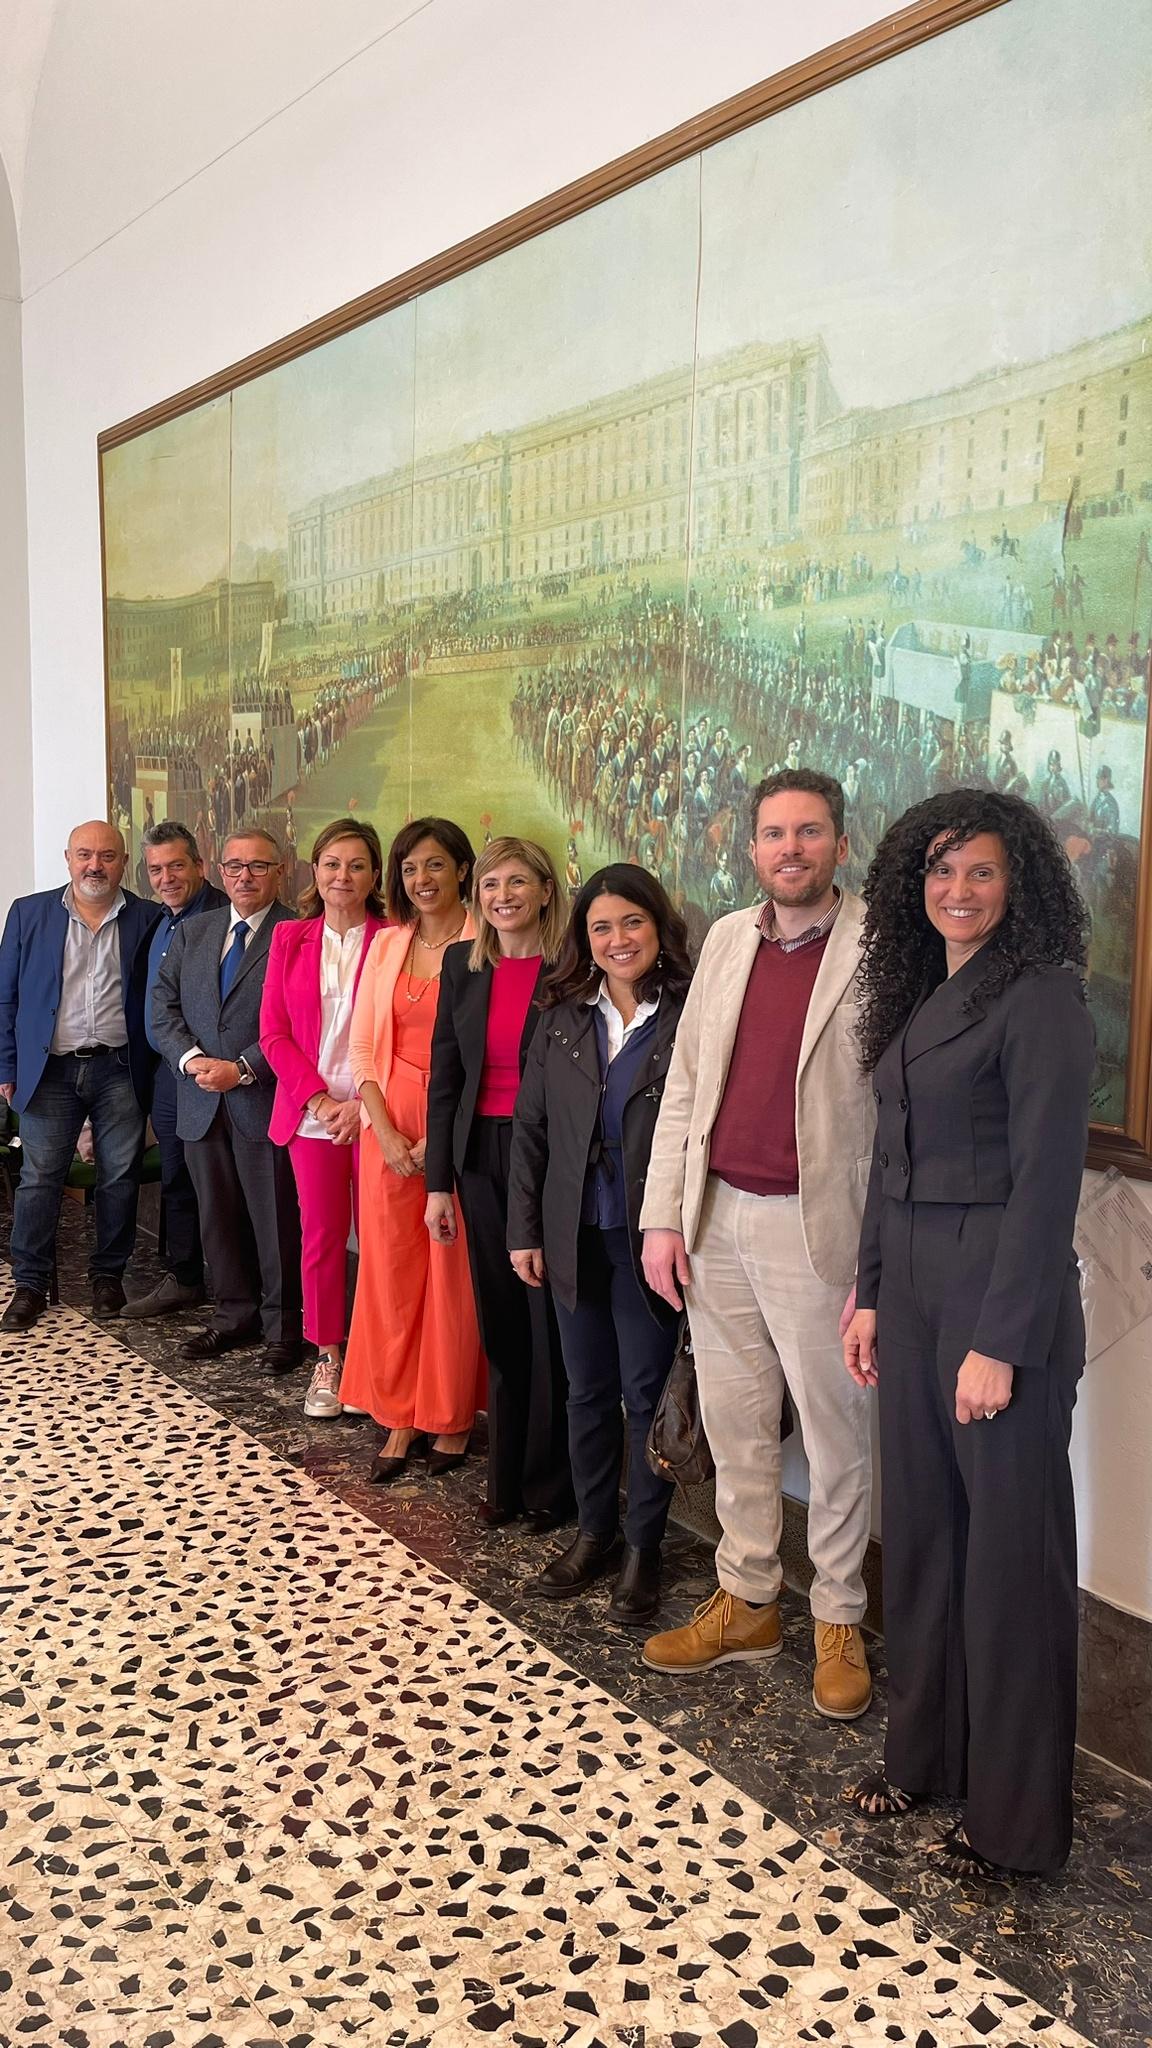 Una foto dei partecipanti al convegno su Matilde Serao, sullo sfondo della sala conferenze dell'Archivio di Stato alla Reggia di Caserta